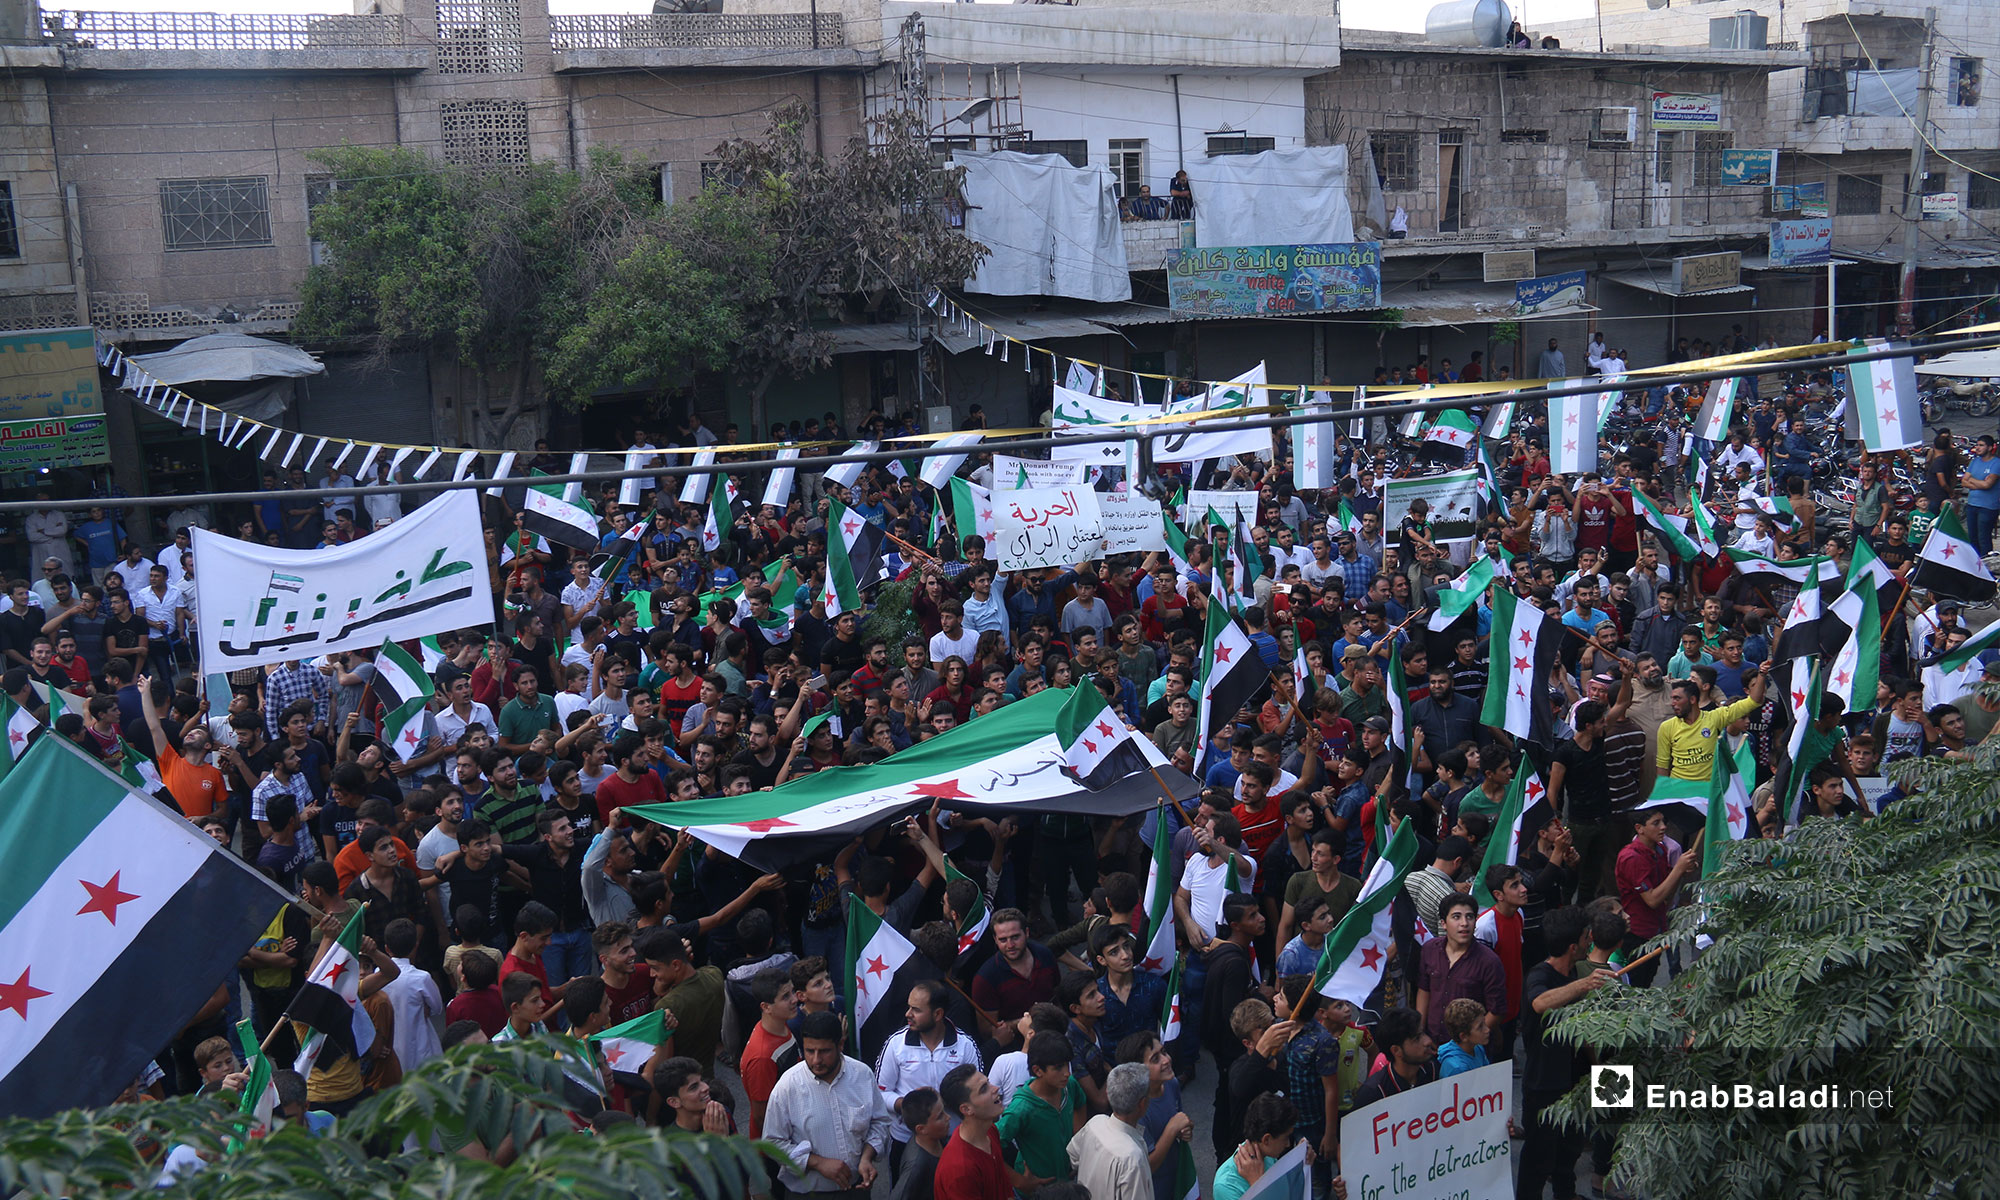 مظاهرات تطالب بتجديد الثورة والإفراج عن المعتقلين في مدينة كفرنبل بريف إدلب  - 21 من أيلول 2018 (عنب بلدي)